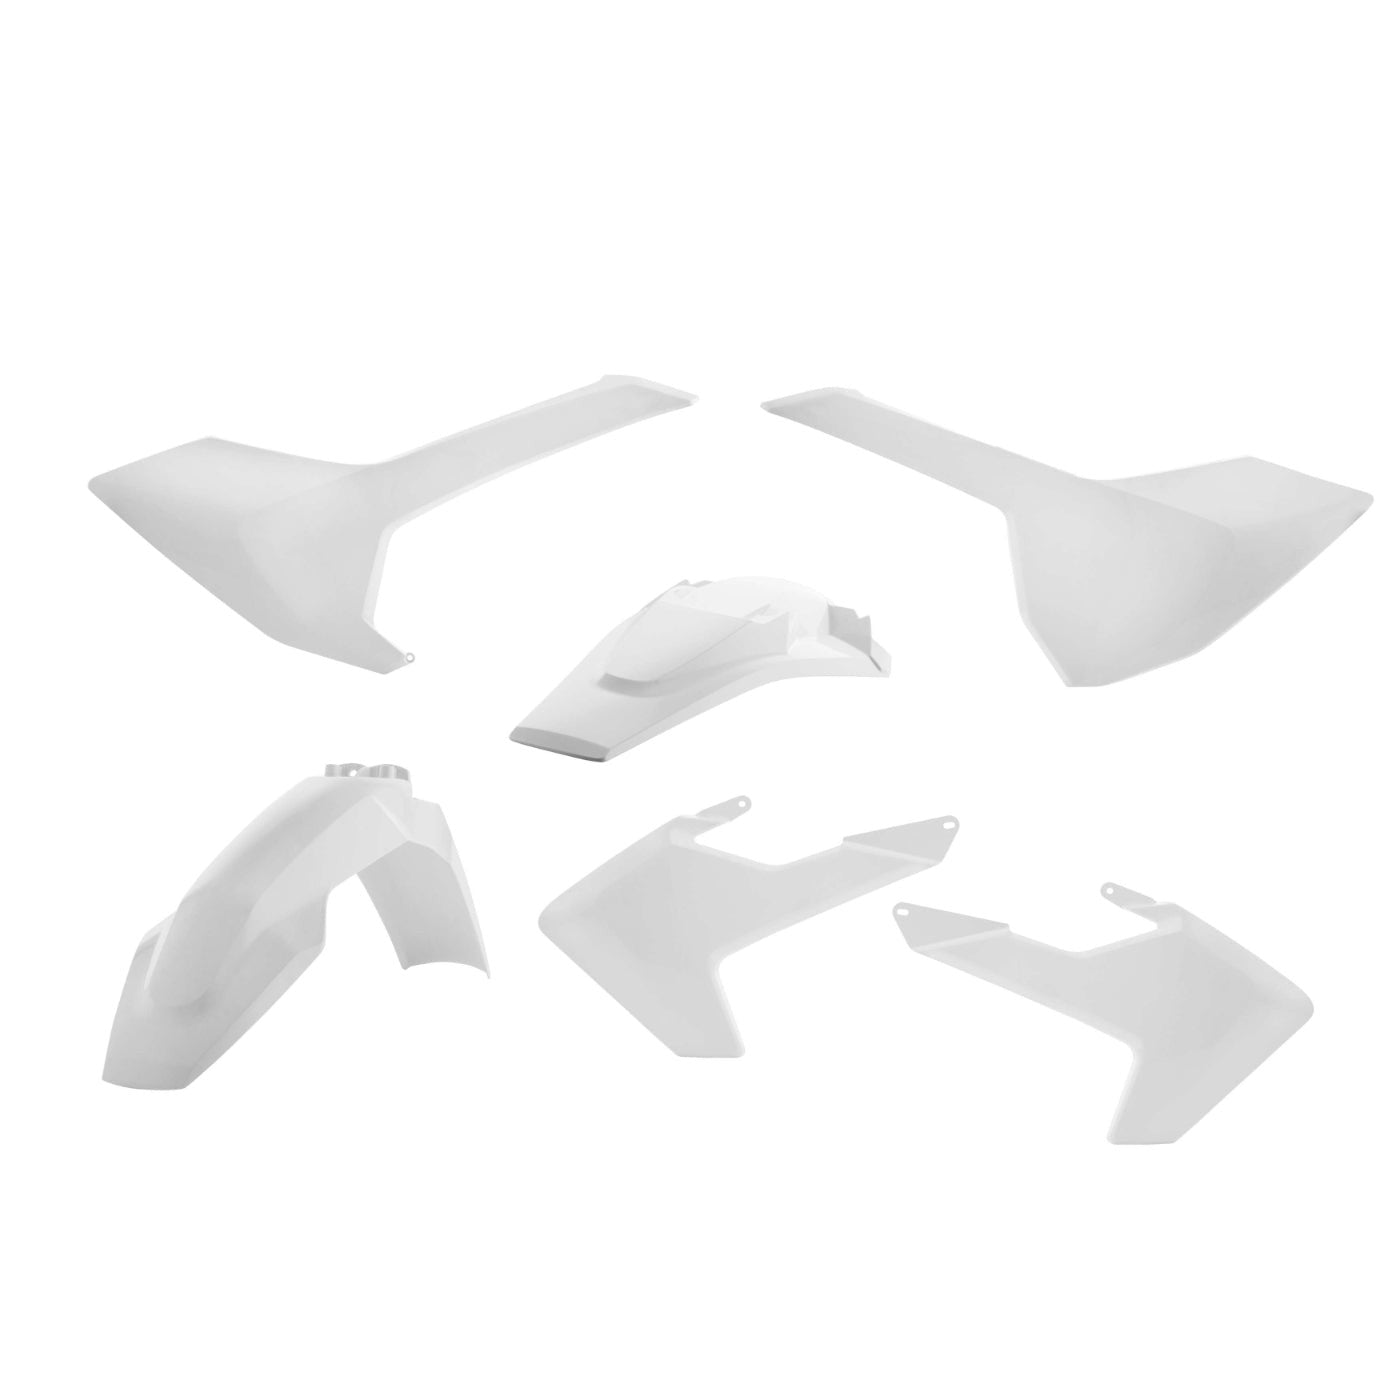 Acerbis White Standard Plastic Kit for Husqvarna - 2634020002